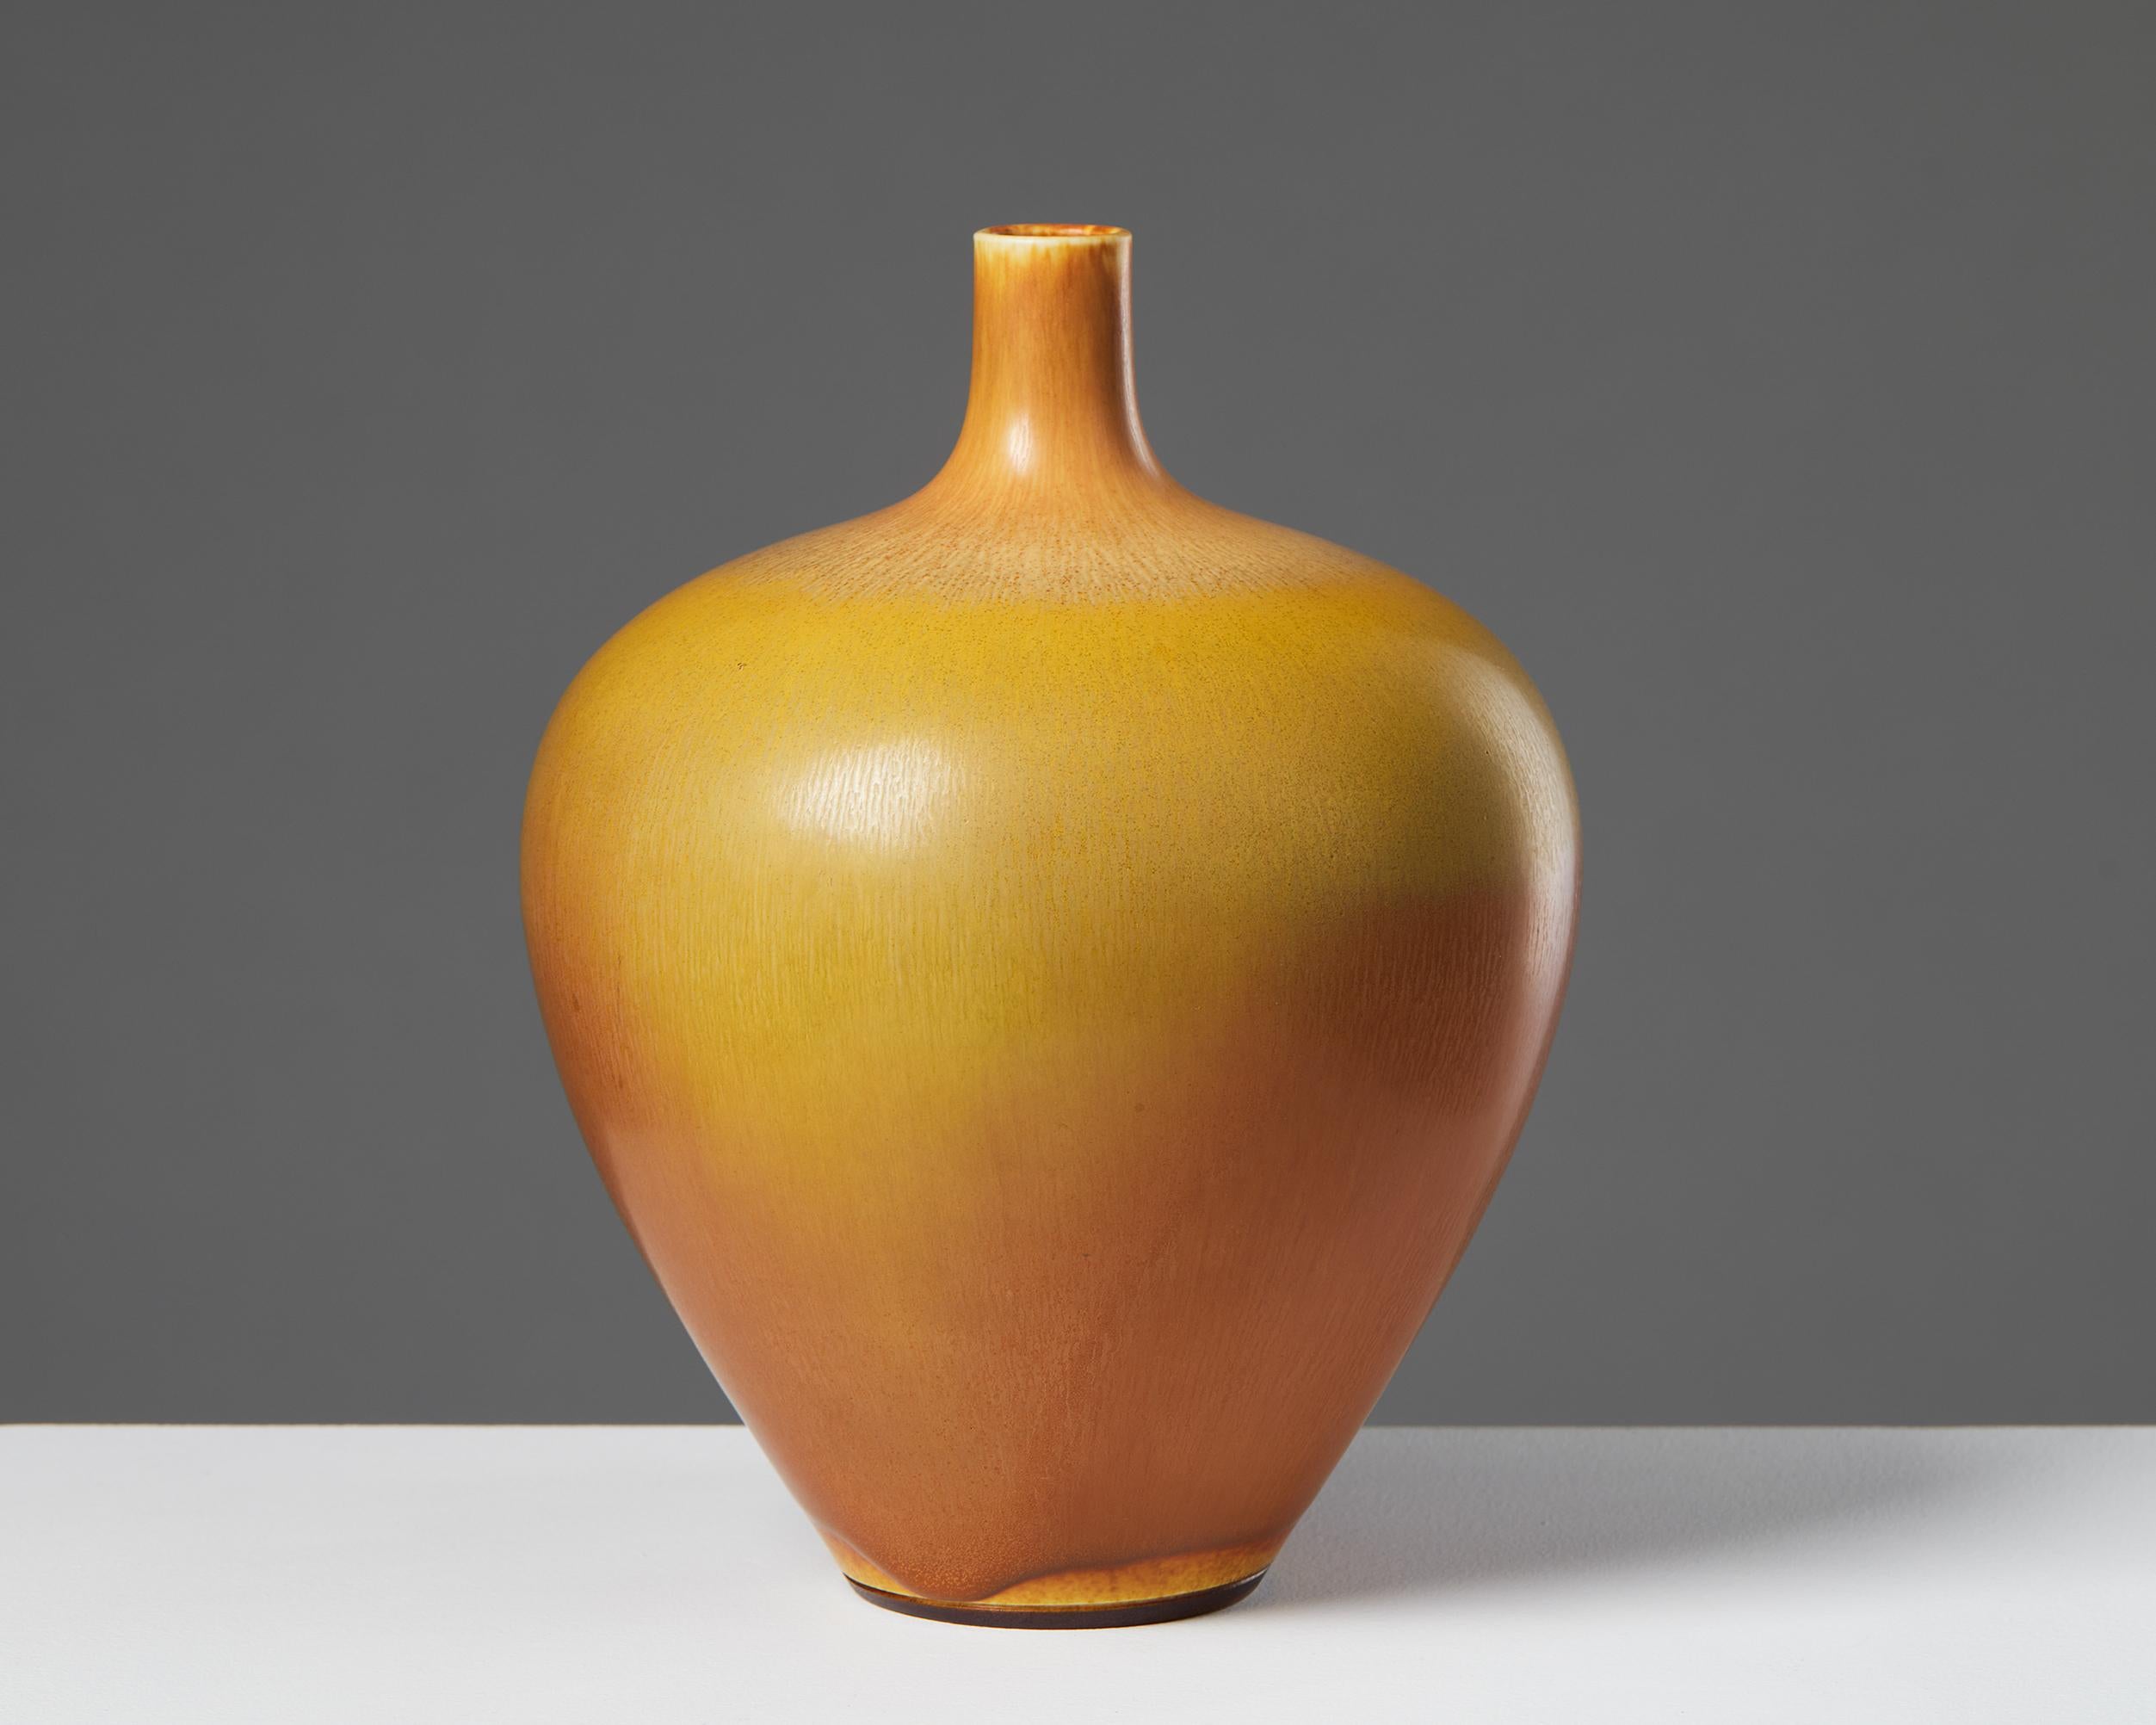 Vase designed by Berndt Friberg for Gustavsberg,
Sweden. 1977.
Stoneware.

Signed.

Measures: H: 21 cm / 8 1/4